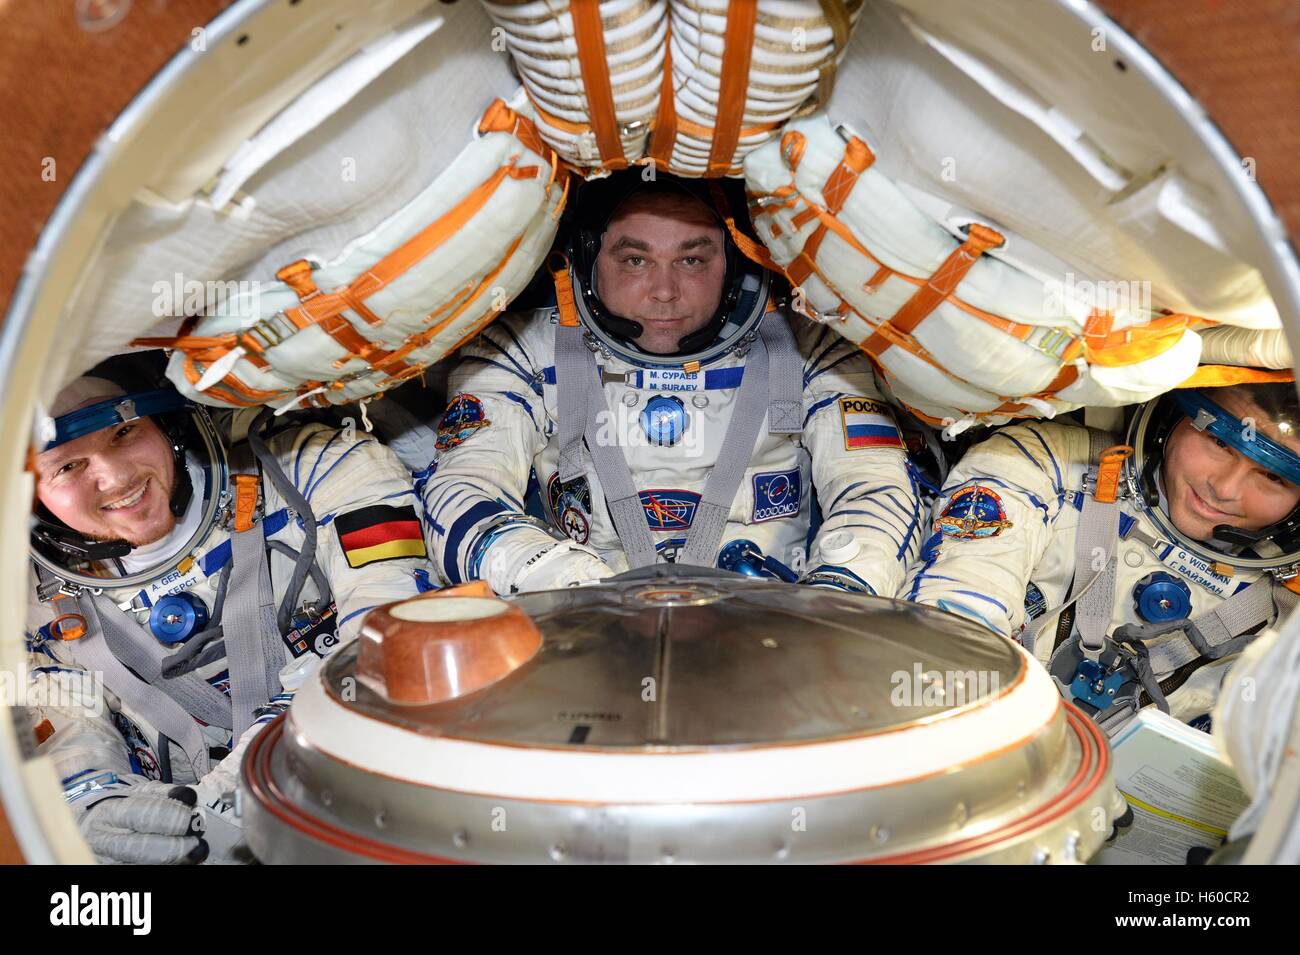 La Station spatiale internationale de la NASA, l'équipage Expedition 40/41 (L-R) L'astronaute allemand Alexander Gerst de l'Agence spatiale européenne, le cosmonaute russe Maksim Suraev de Roscosmos, de l'astronaute Reid Wiseman s'asseoir à l'intérieur du vaisseau Soyouz TMA-13M pour les vérifications finales en vue de leur prochain retour sur Terre le 31 octobre 2014 dans l'orbite de la Terre. Banque D'Images